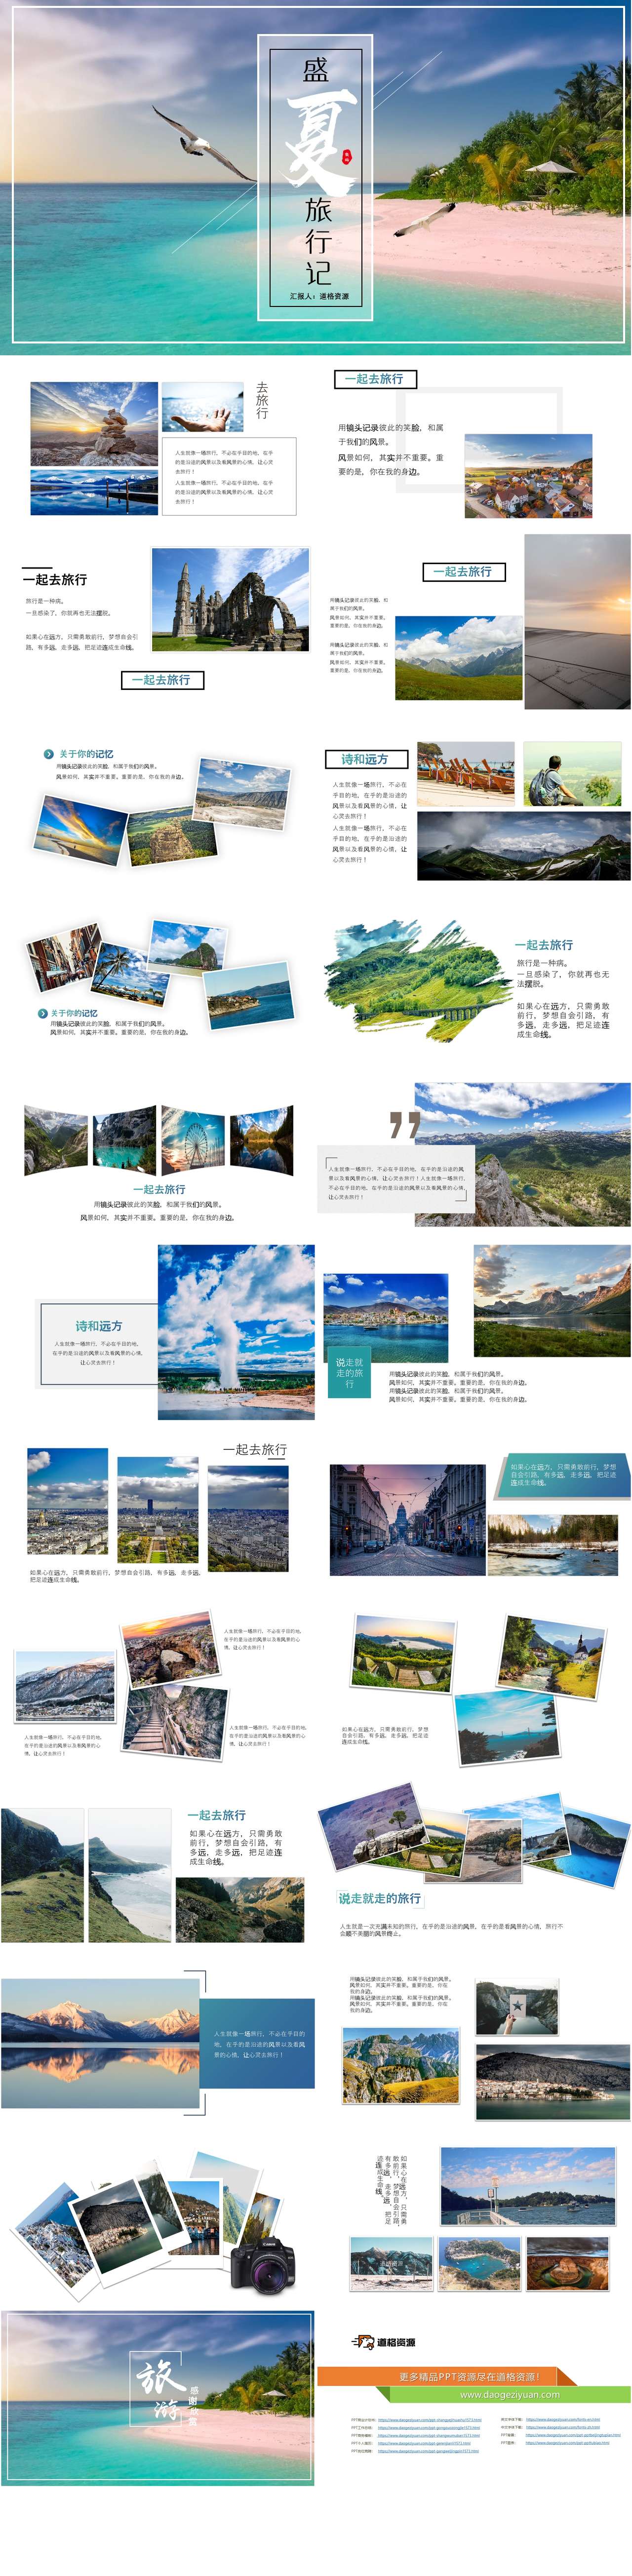 清新风盛夏之旅旅游相册PPT模板（2）